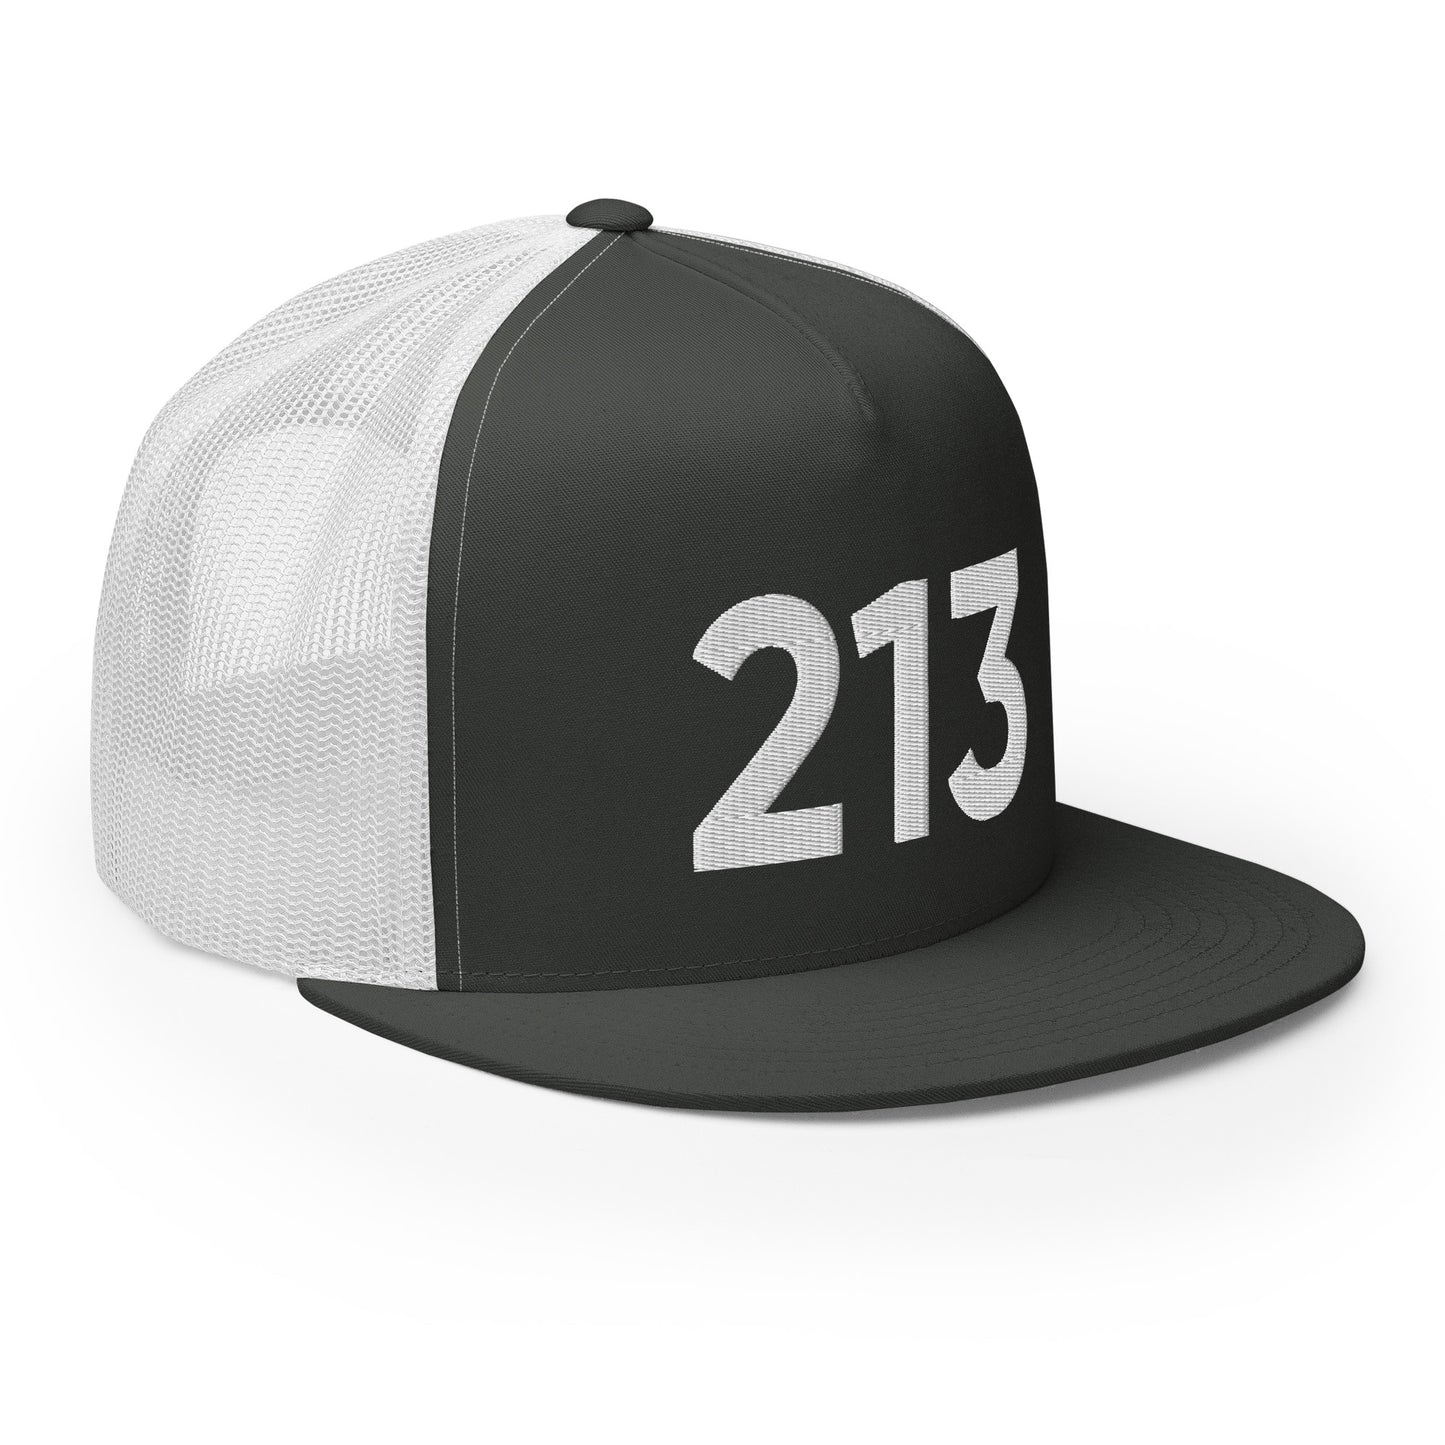 213 LA Trucker Hat